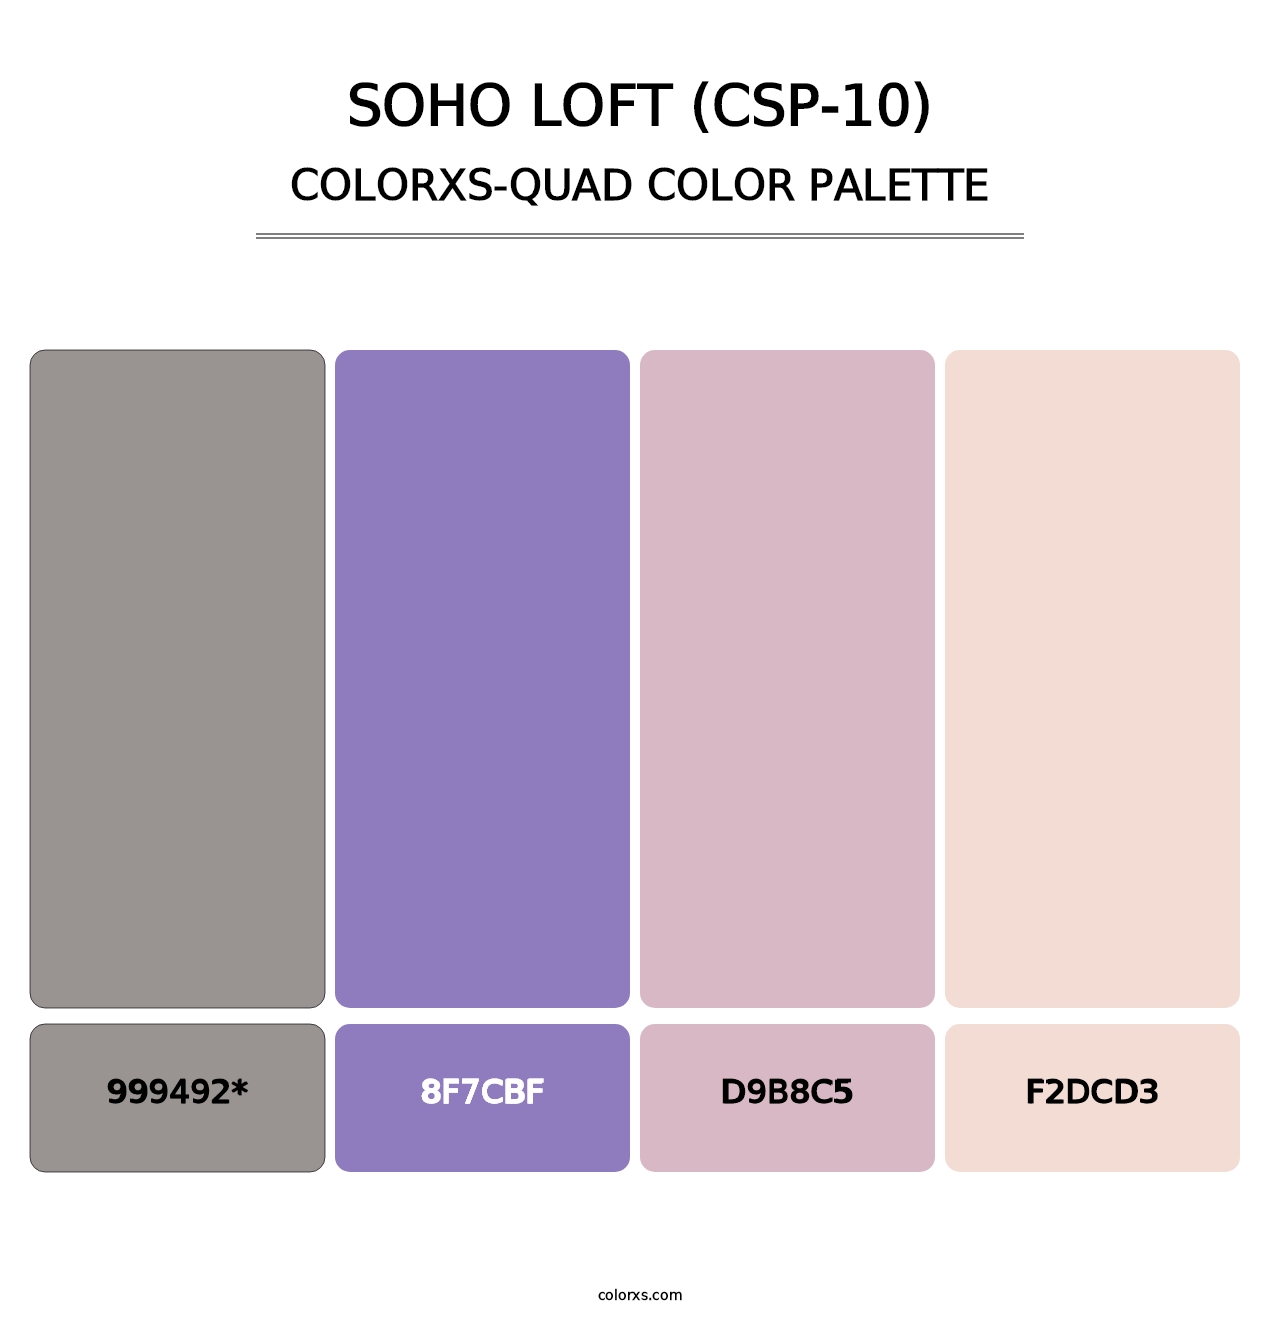 Soho Loft (CSP-10) - Colorxs Quad Palette